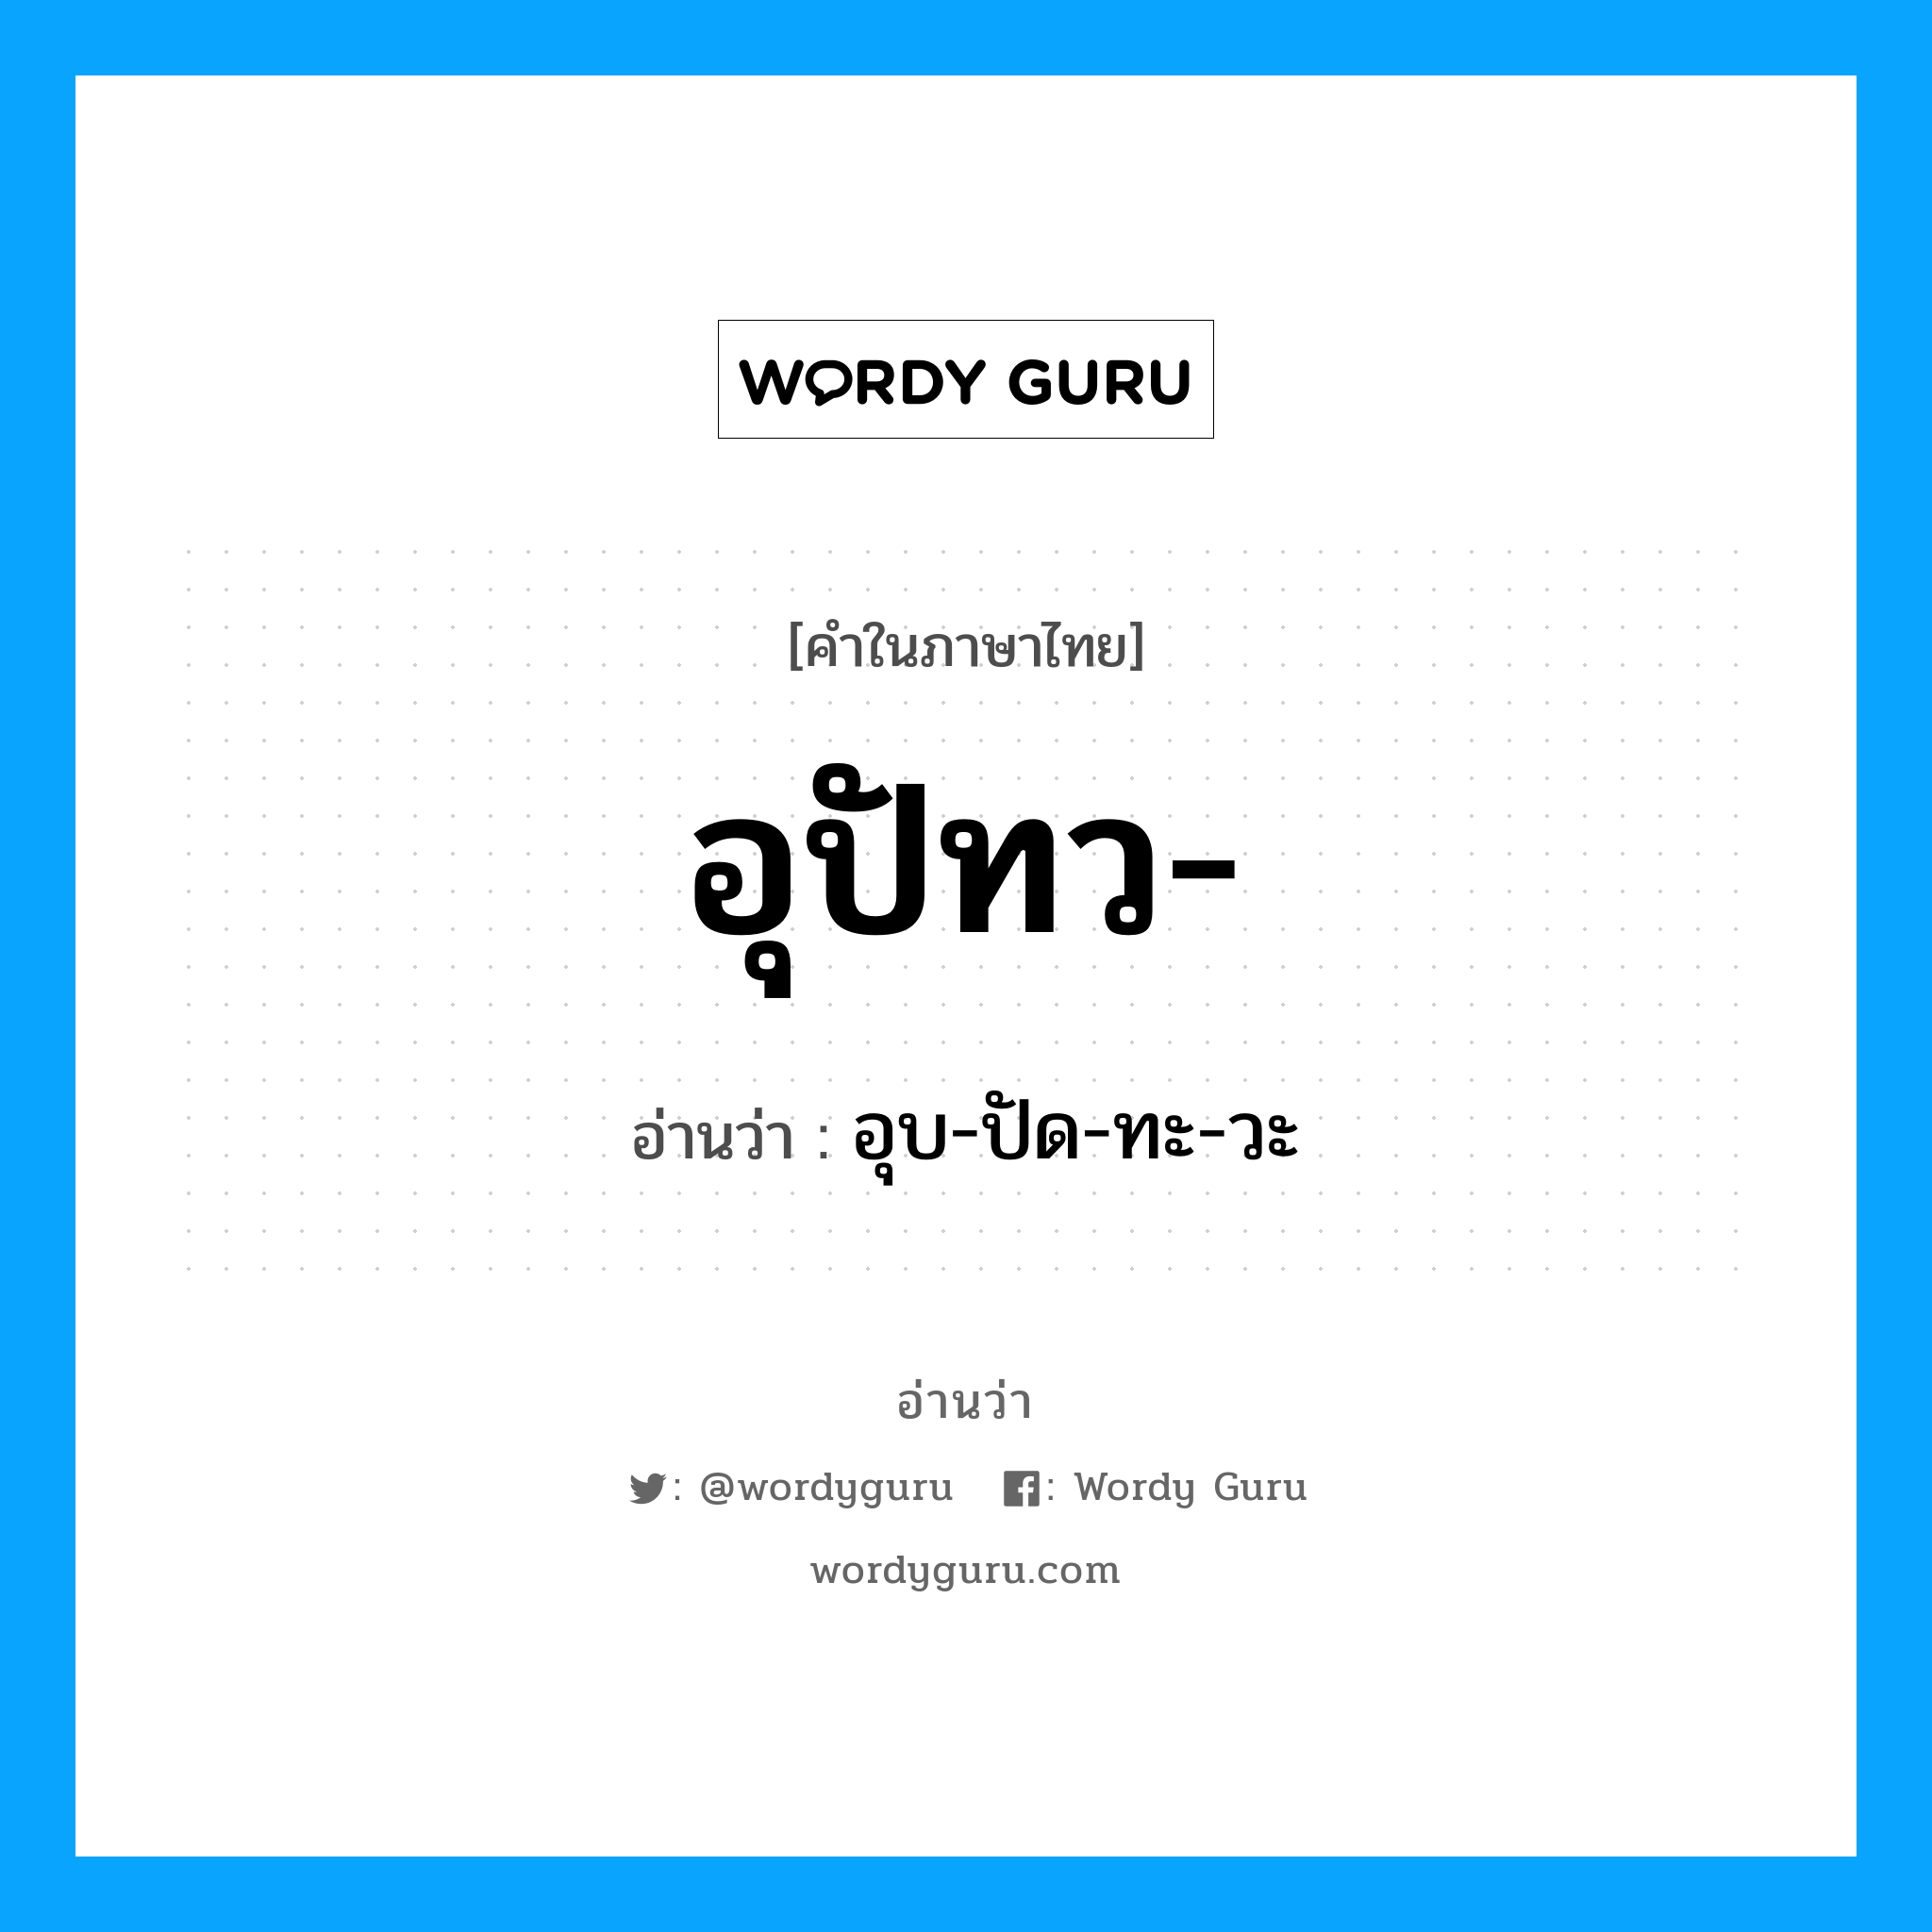 อุบ-ปัด-ทะ-วะ เป็นคำอ่านของคำไหน?, คำในภาษาไทย อุบ-ปัด-ทะ-วะ อ่านว่า อุปัทว-